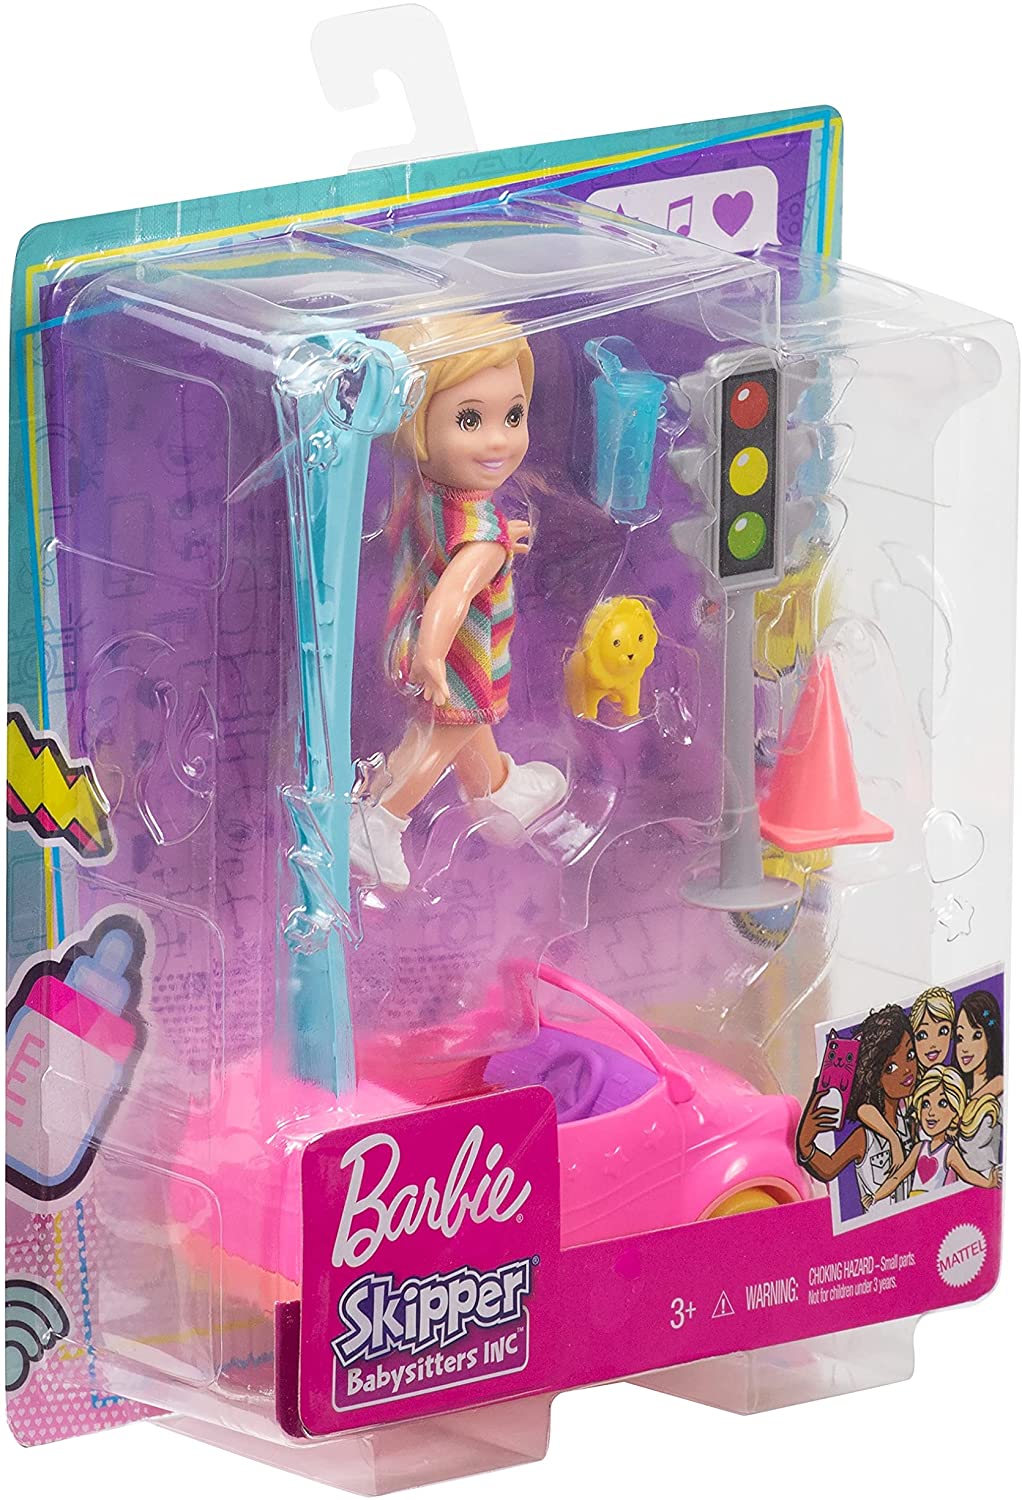 Barbie GRP17 Skipper Babysitters Inc. Zubehörset mit kleiner Kleinkindpuppe und Spielzeugauto, plus Ampel, Kegel, Tasse und Löwenspielzeug, Geschenk für 3- bis 7-Jährige, mehrfarbig, 18,5 cm x 12,73 cm x 6,32 cm